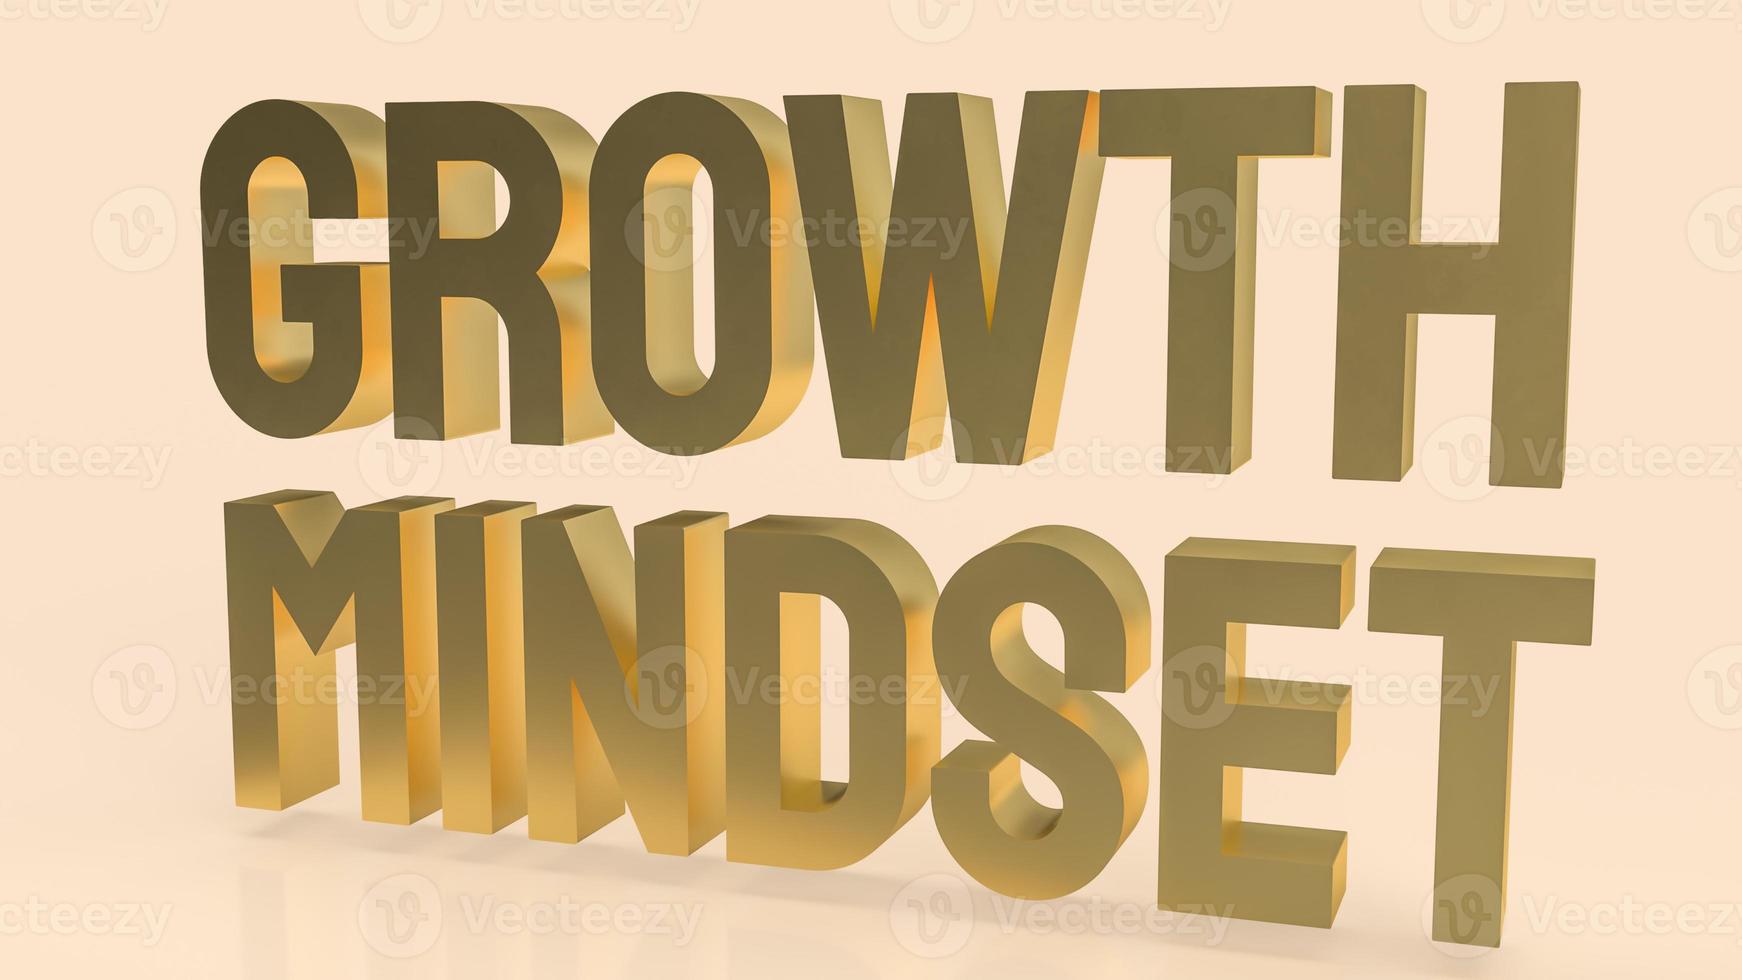 das Goldwachstums-Mindset-Wort auf cremefarbenem Hintergrund 3D-Rendering foto